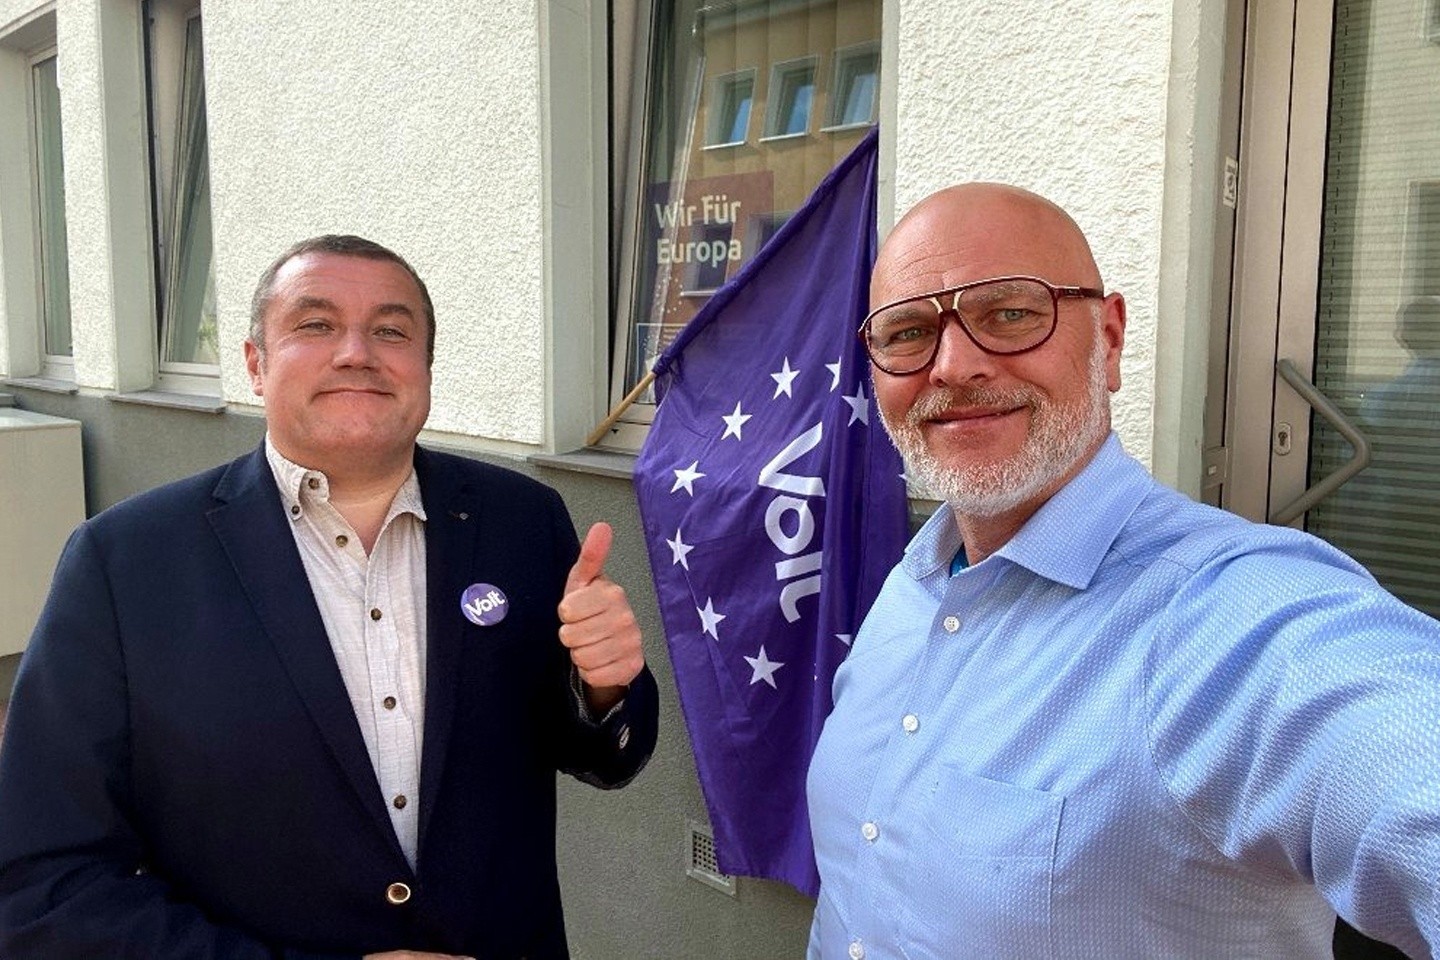 Landratskandidat des Kreises Paderborn Thomas Mertens und der Bad Driburger Bürgermeisterkandidat Wilk Spieker